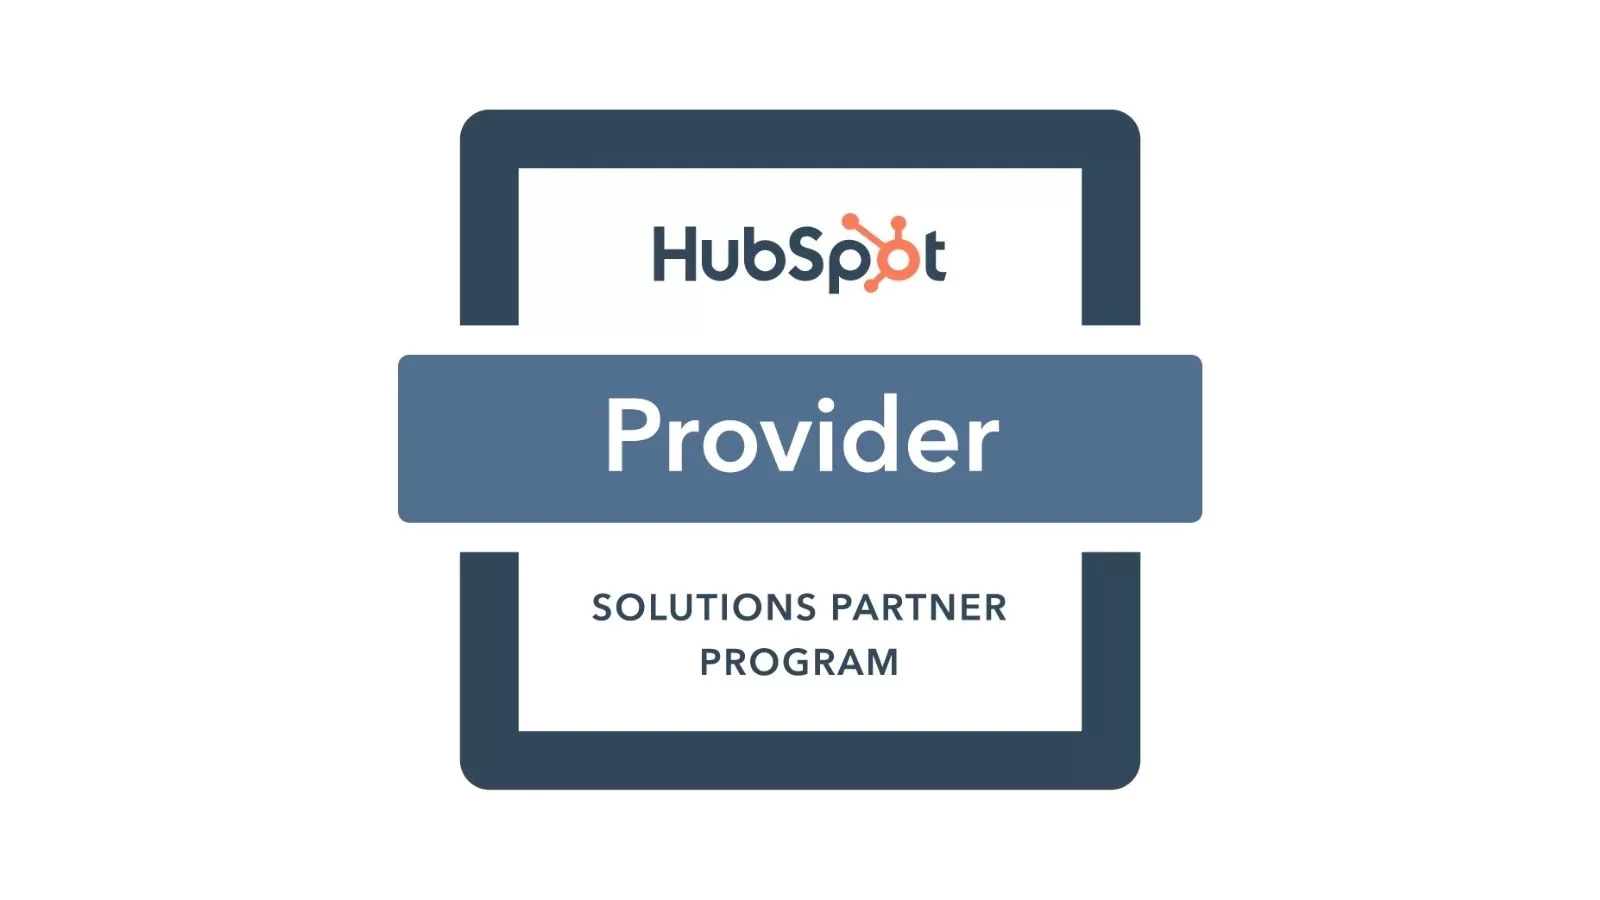 hubspot solutions partner provider Toud